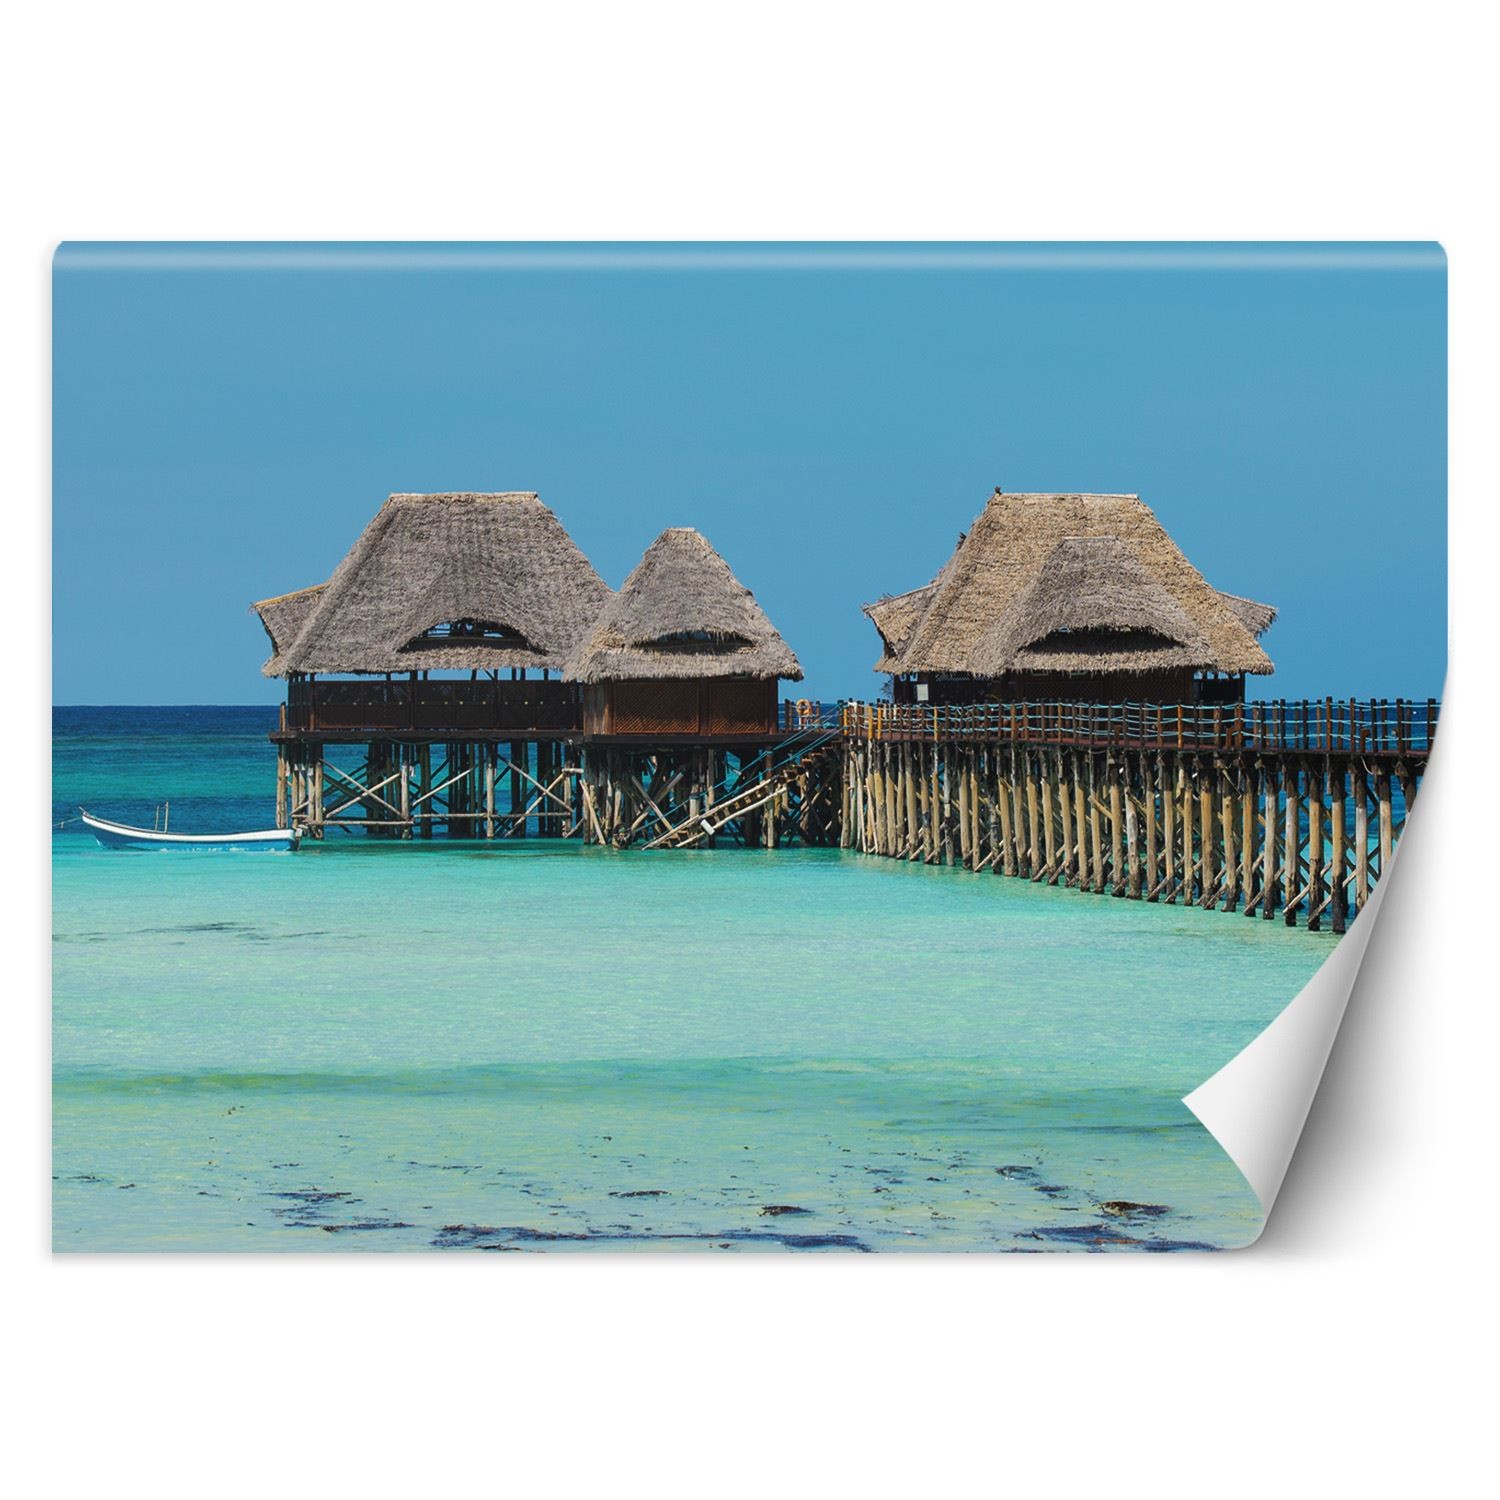 Trend24 – Behang – Malediven – Behangpapier – Fotobehang Natuur – Behang Woonkamer – 450x315x2 cm – Incl. behanglijm